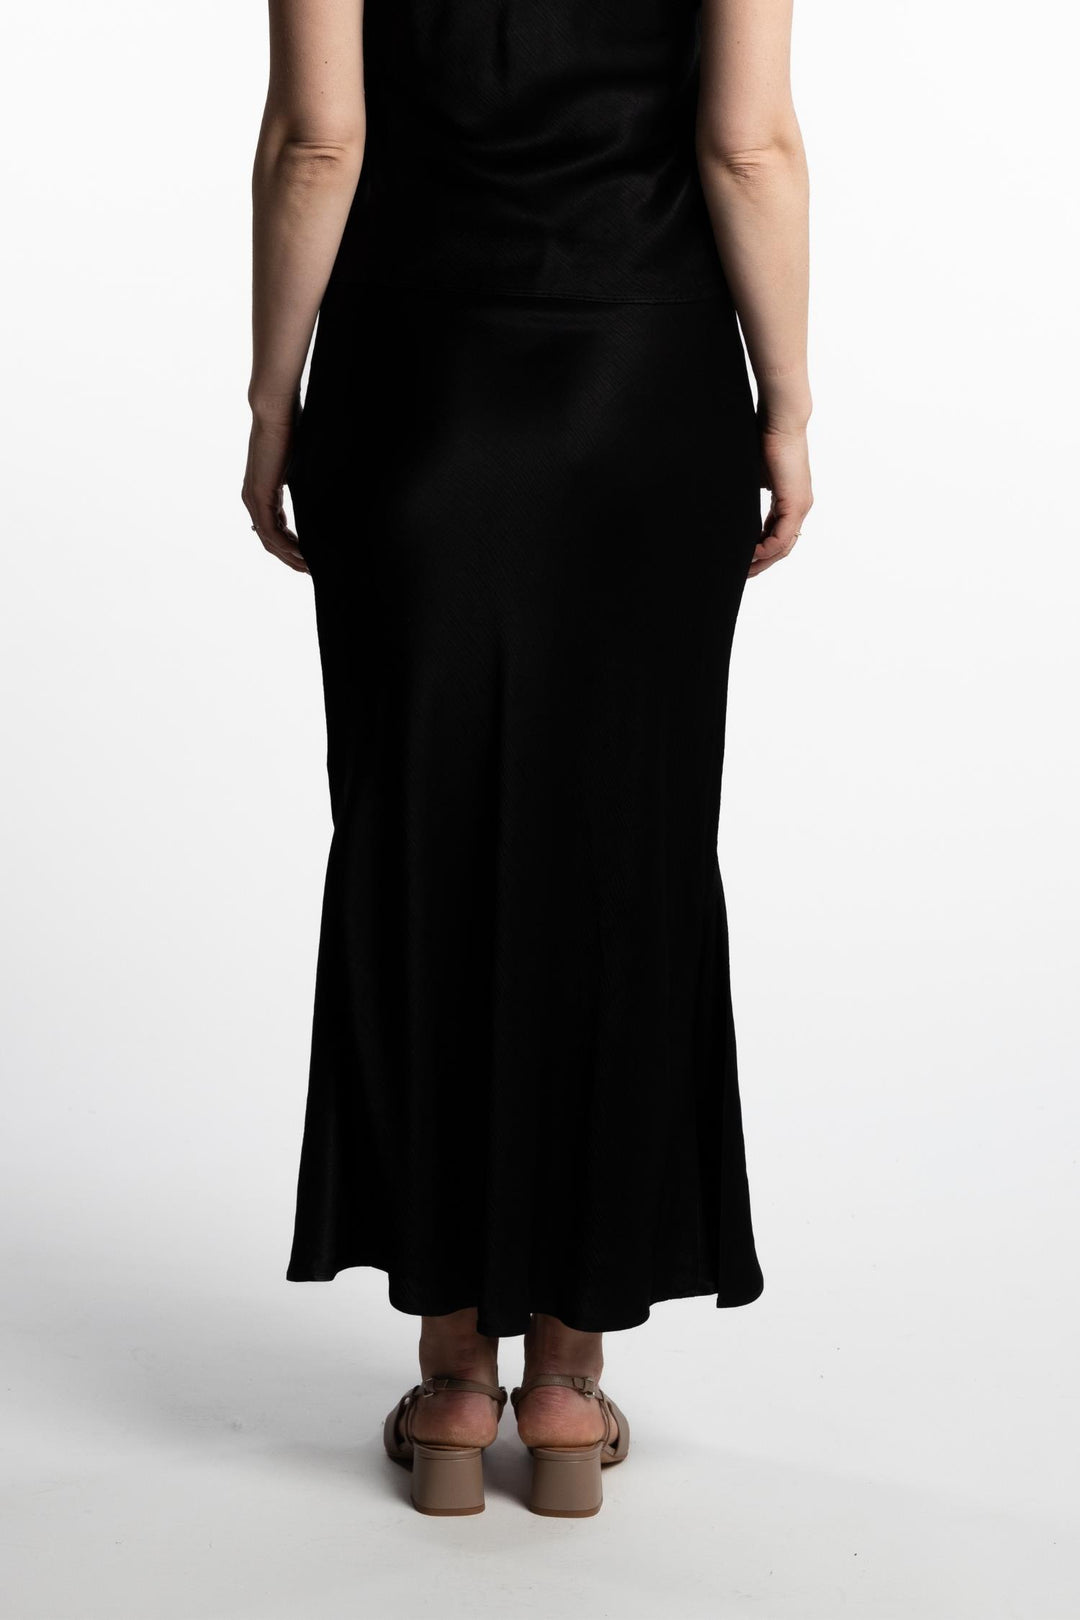 Hyro Skirt- Black